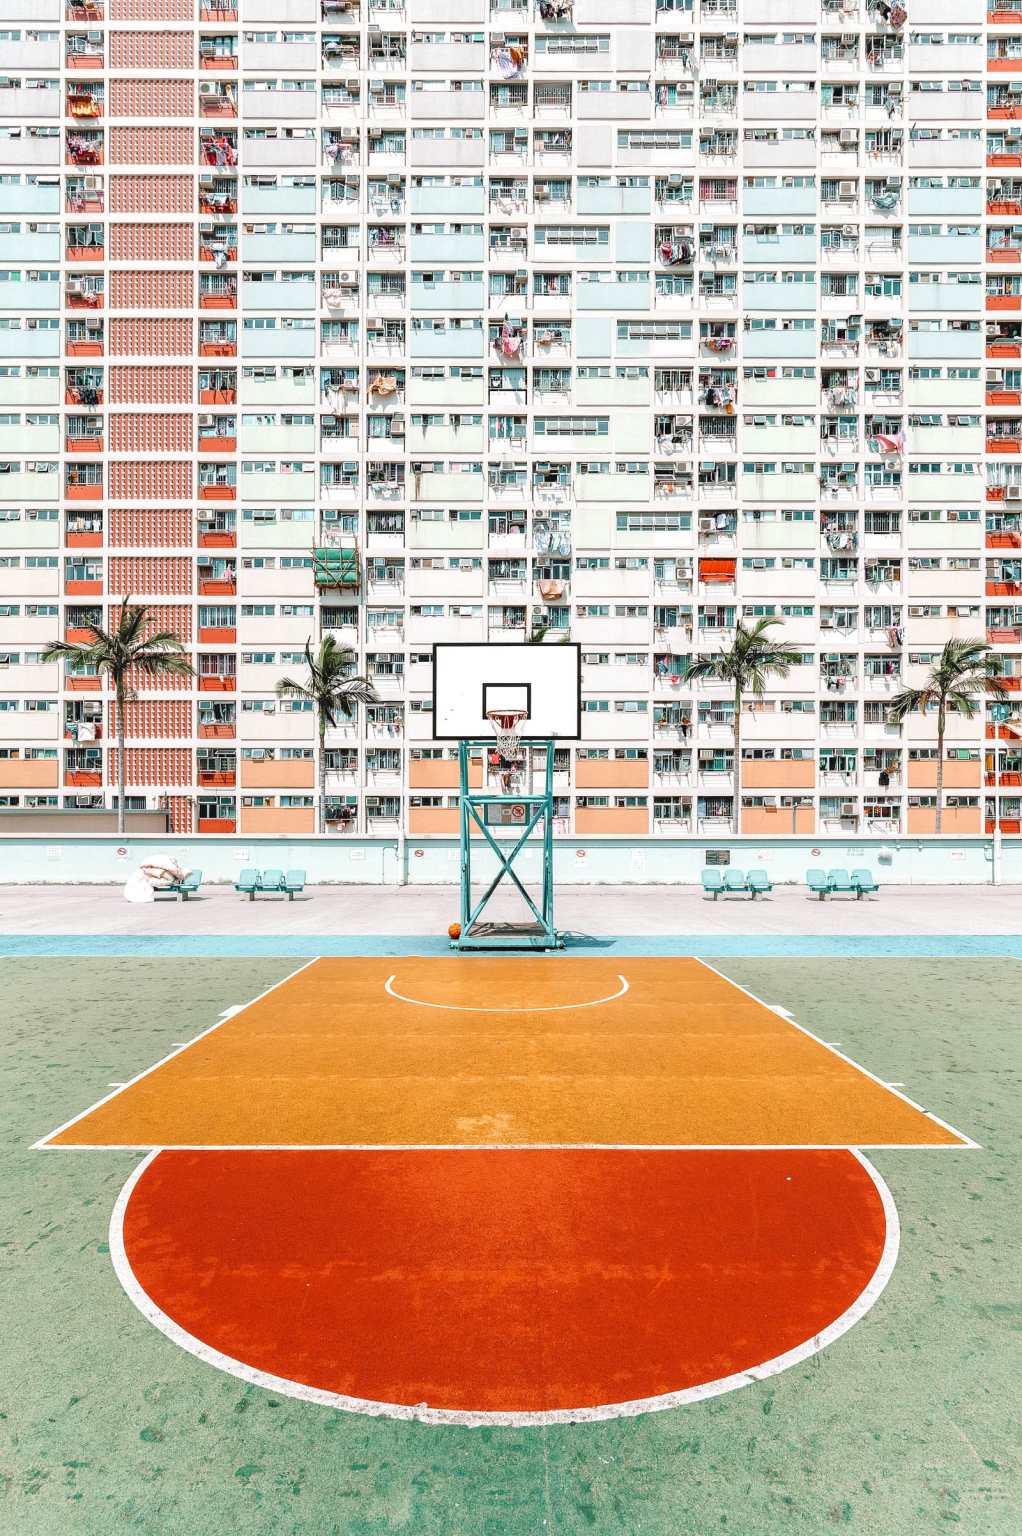 Choi Hung Estate, tòa nhà cầu vồng nổi tiếng với những sân bóng rổ đầy màu sắc.